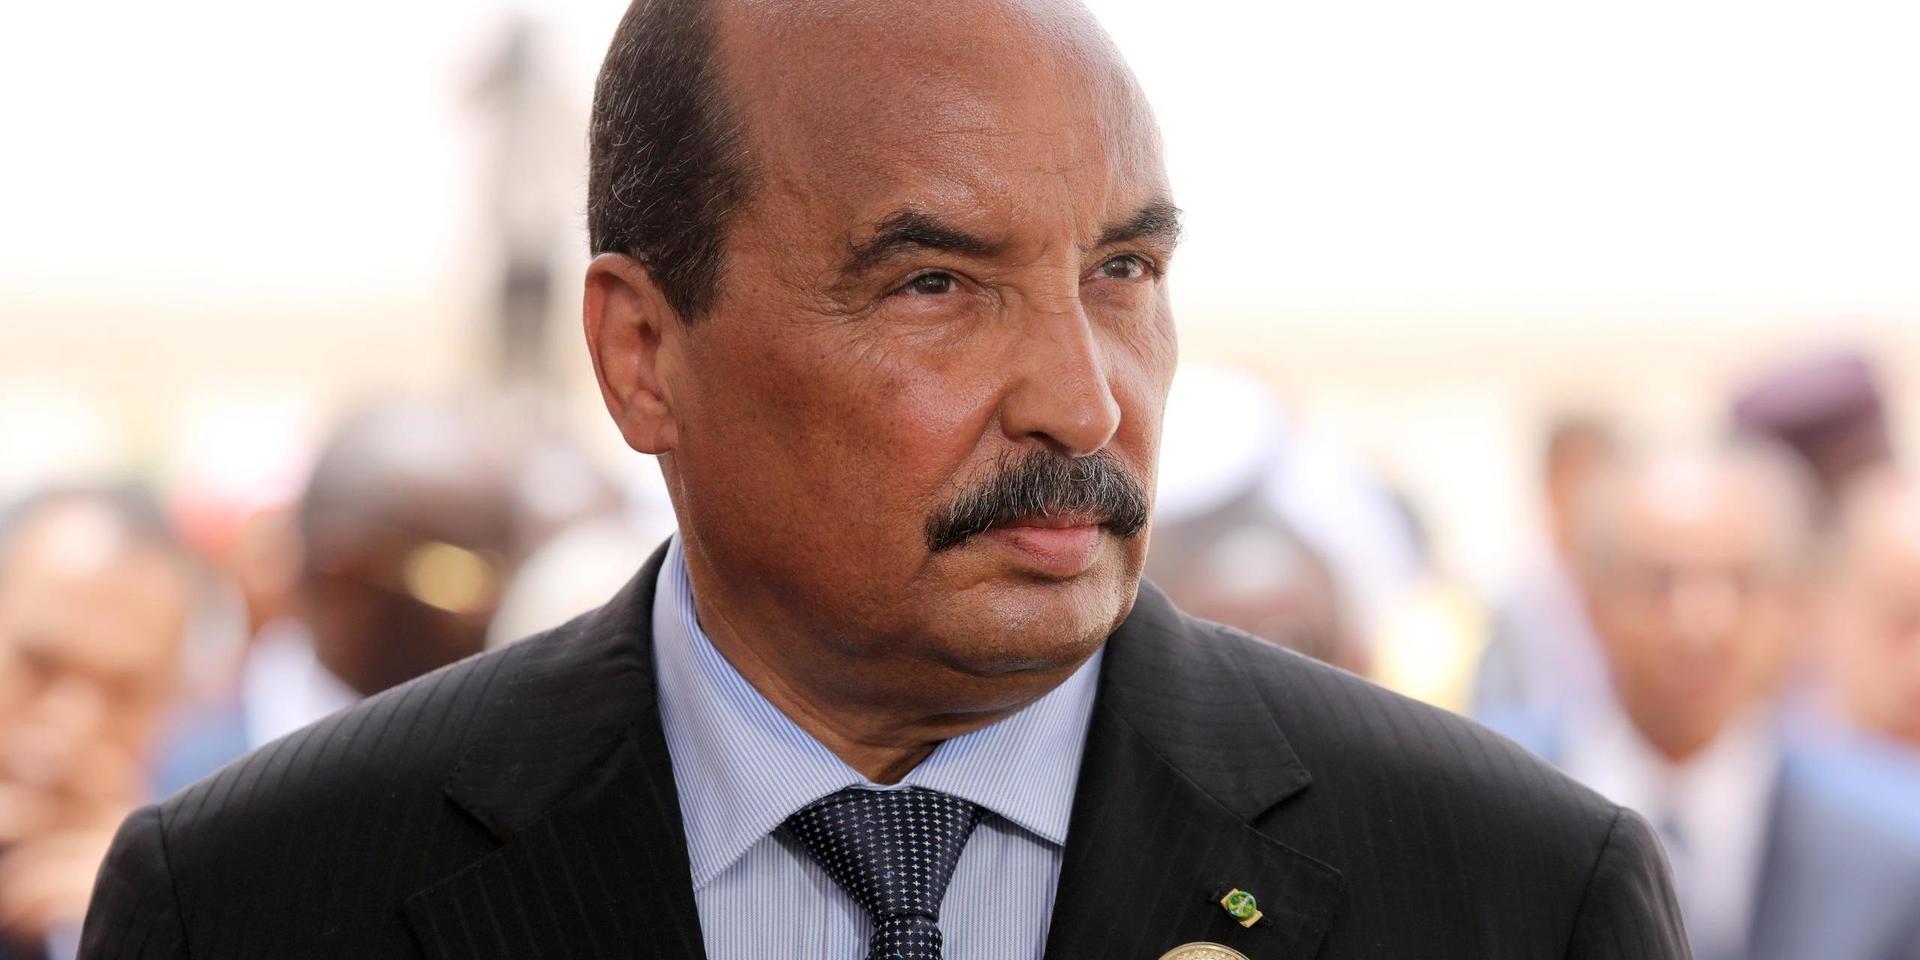 Mauretanien har skakats av politiska skandaler de senaste åren. I fjol lämnade Mohamed Ould Abdel Aziz (bilden) presidentposten efter korruptionsanklagelser. Arkivbild.